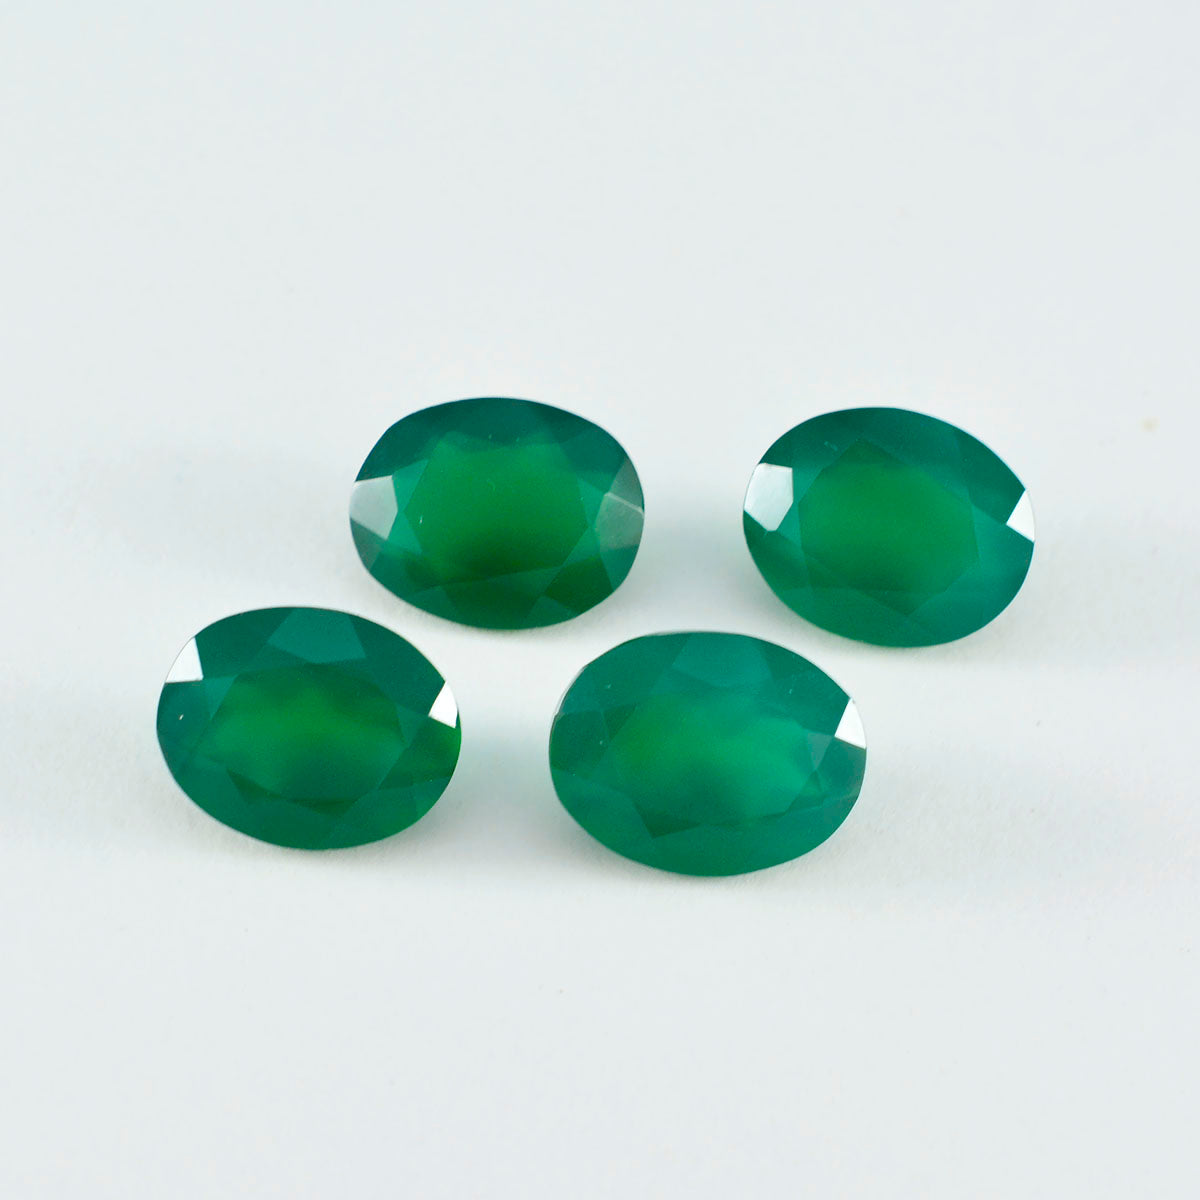 Riyogems 1 Stück echter grüner Onyx, facettiert, 7 x 9 mm, ovale Form, hübscher Qualitäts-Edelstein